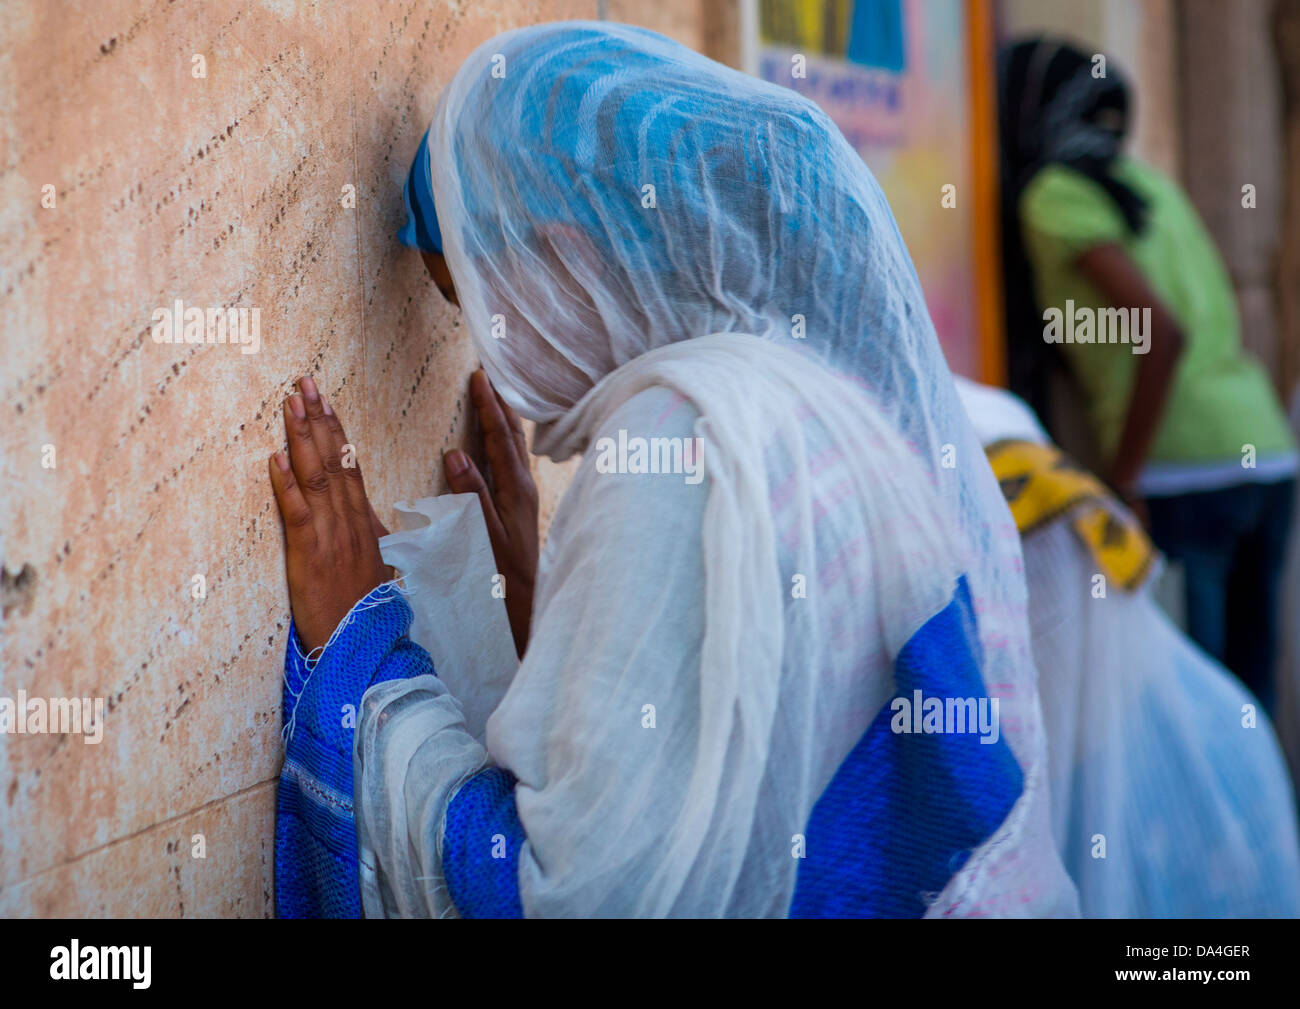 People Praying In A Church, Asmara, Eritrea Stock Photo